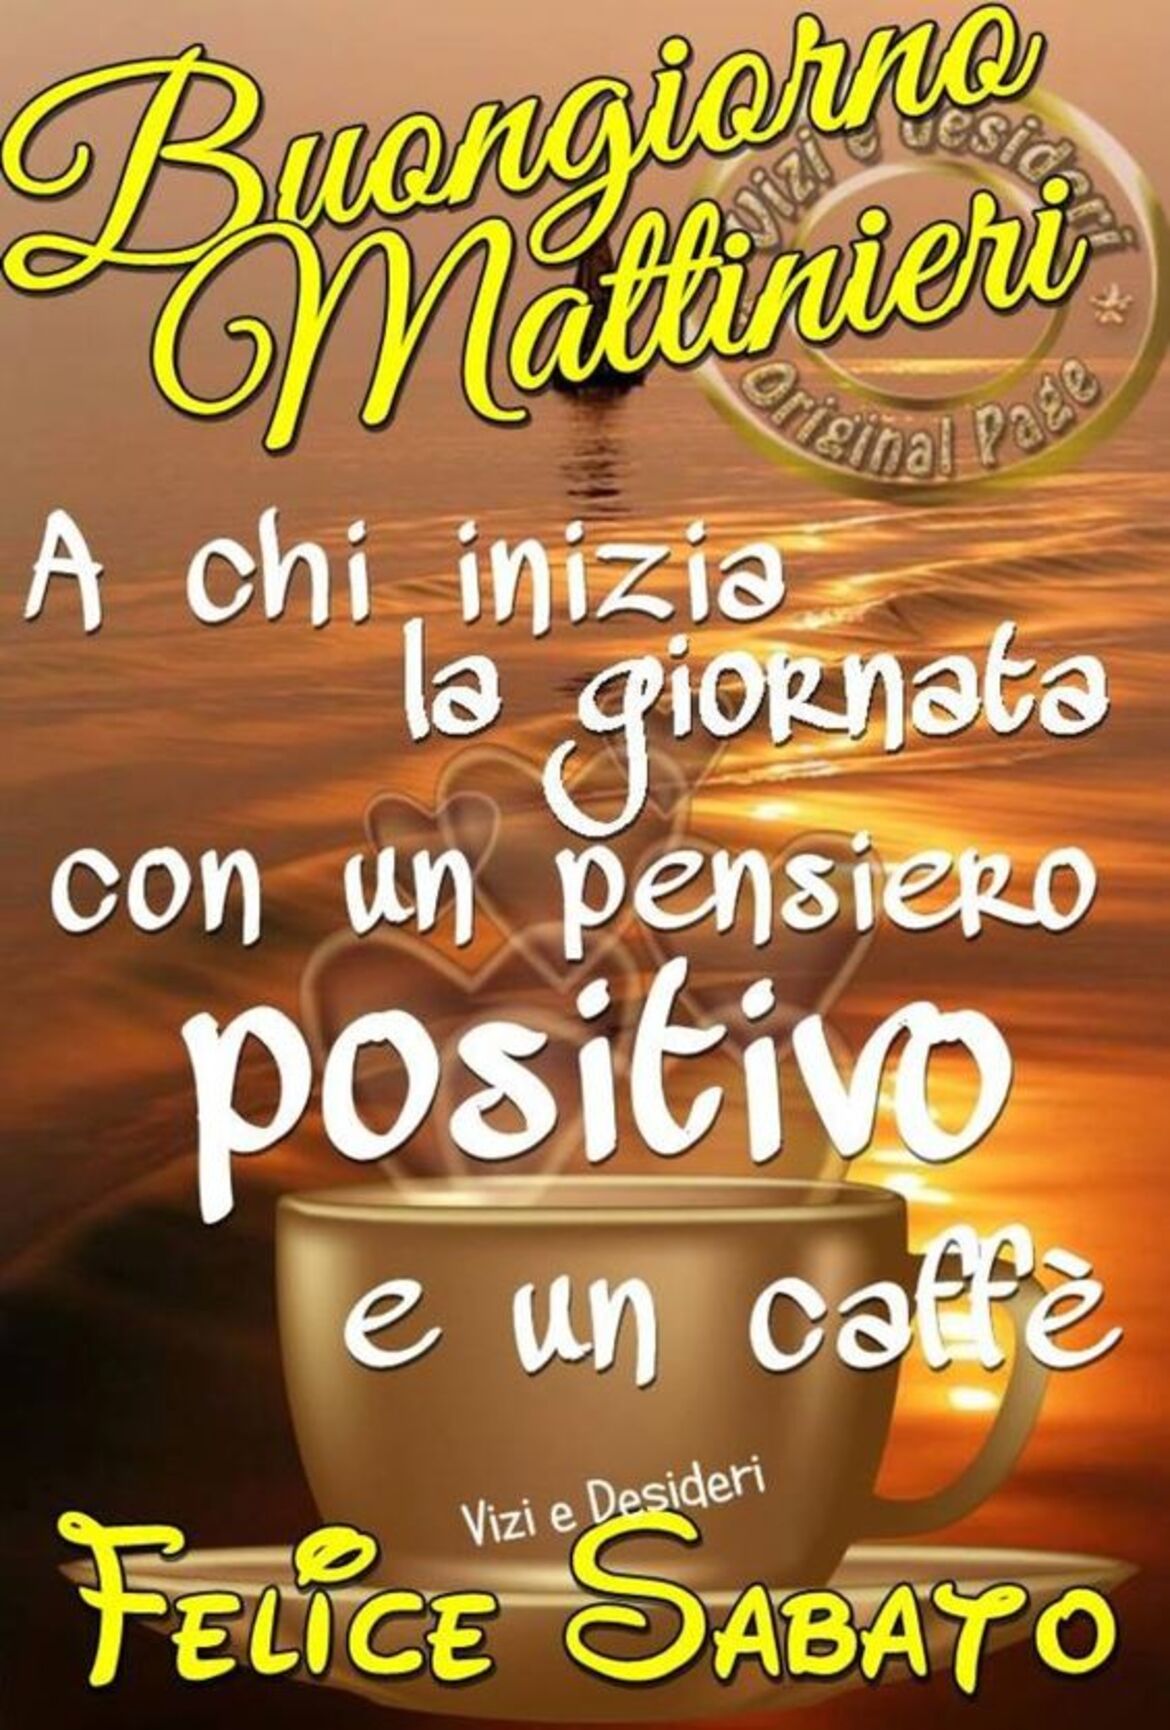 Buongiorno Mattinieri A chi inizia la giornata con un pensiero positivo e un caffè Felice Sabato